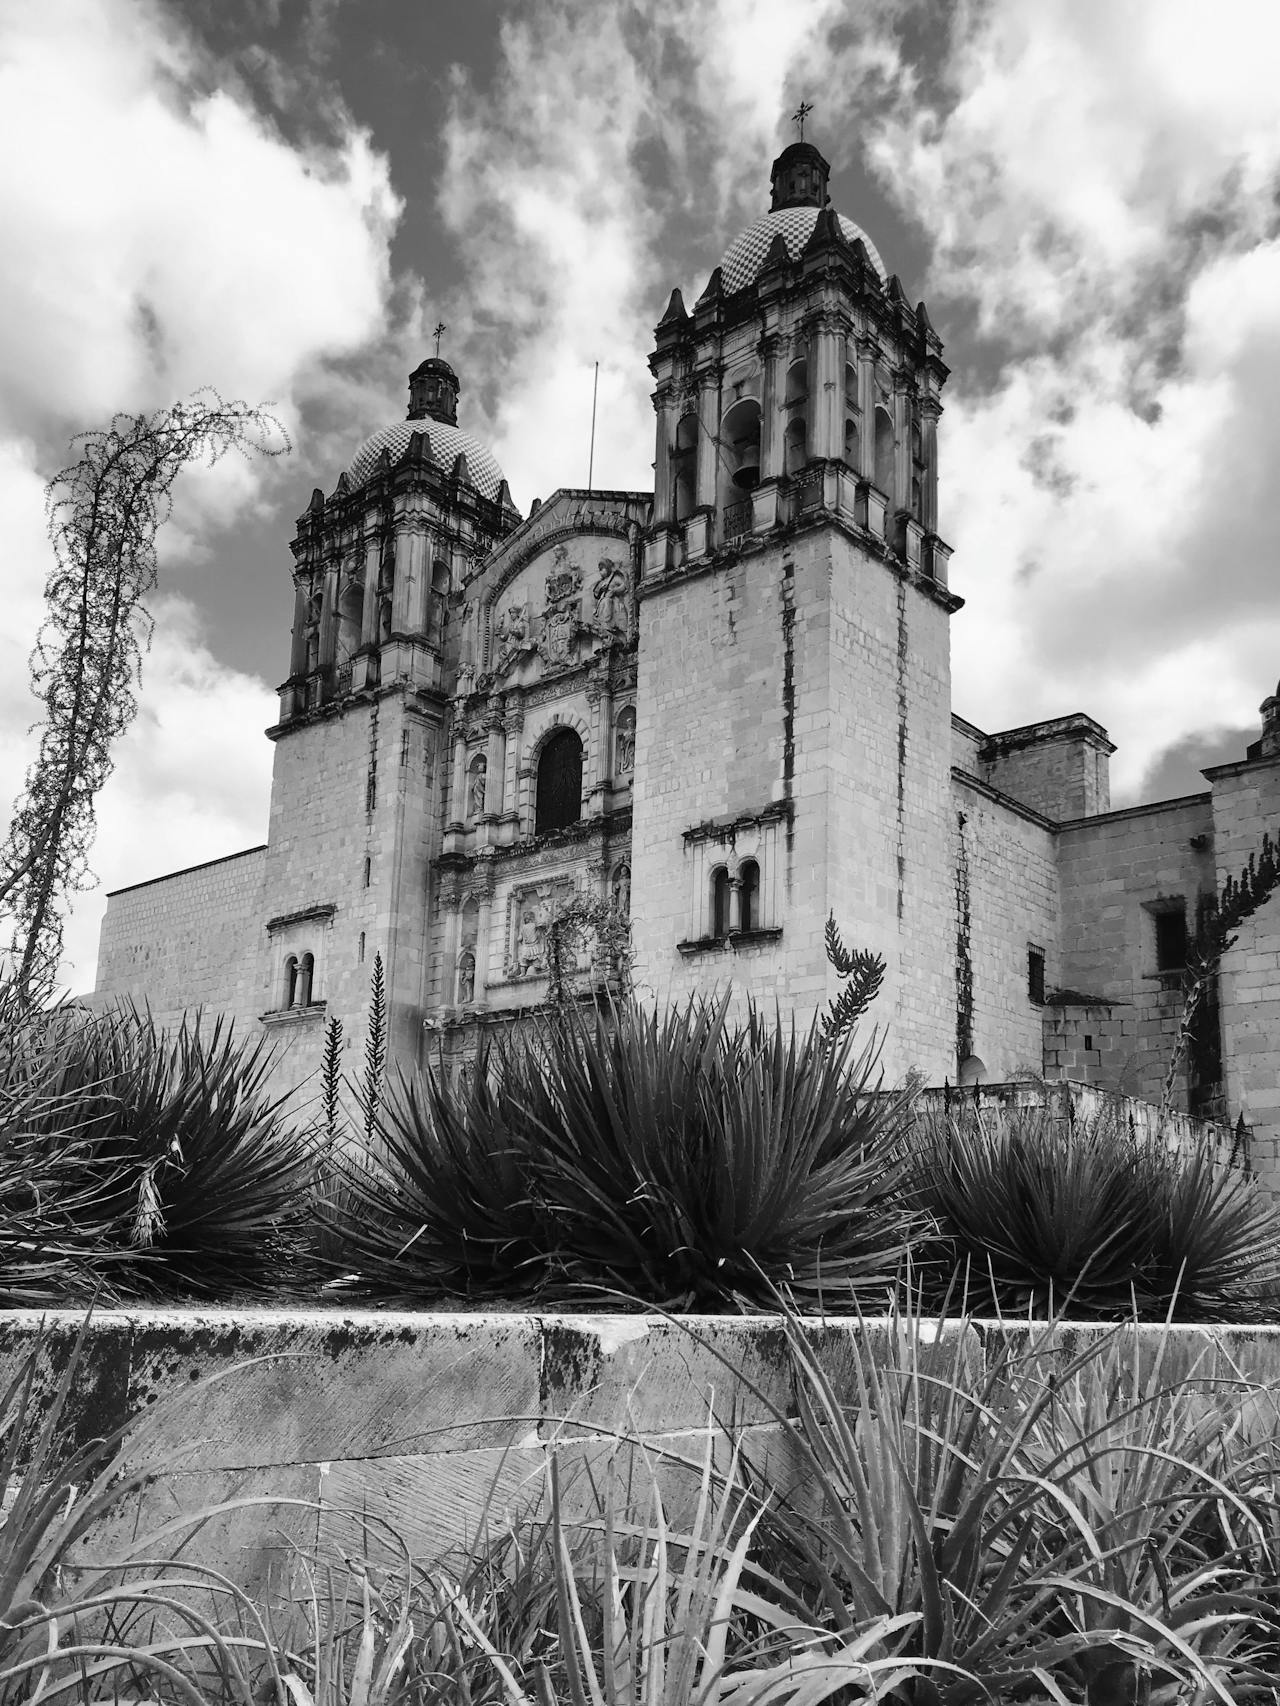 Imagen de la catedral de Oaxaca donde encontrarás consignas de equipaje de Bounce cerca